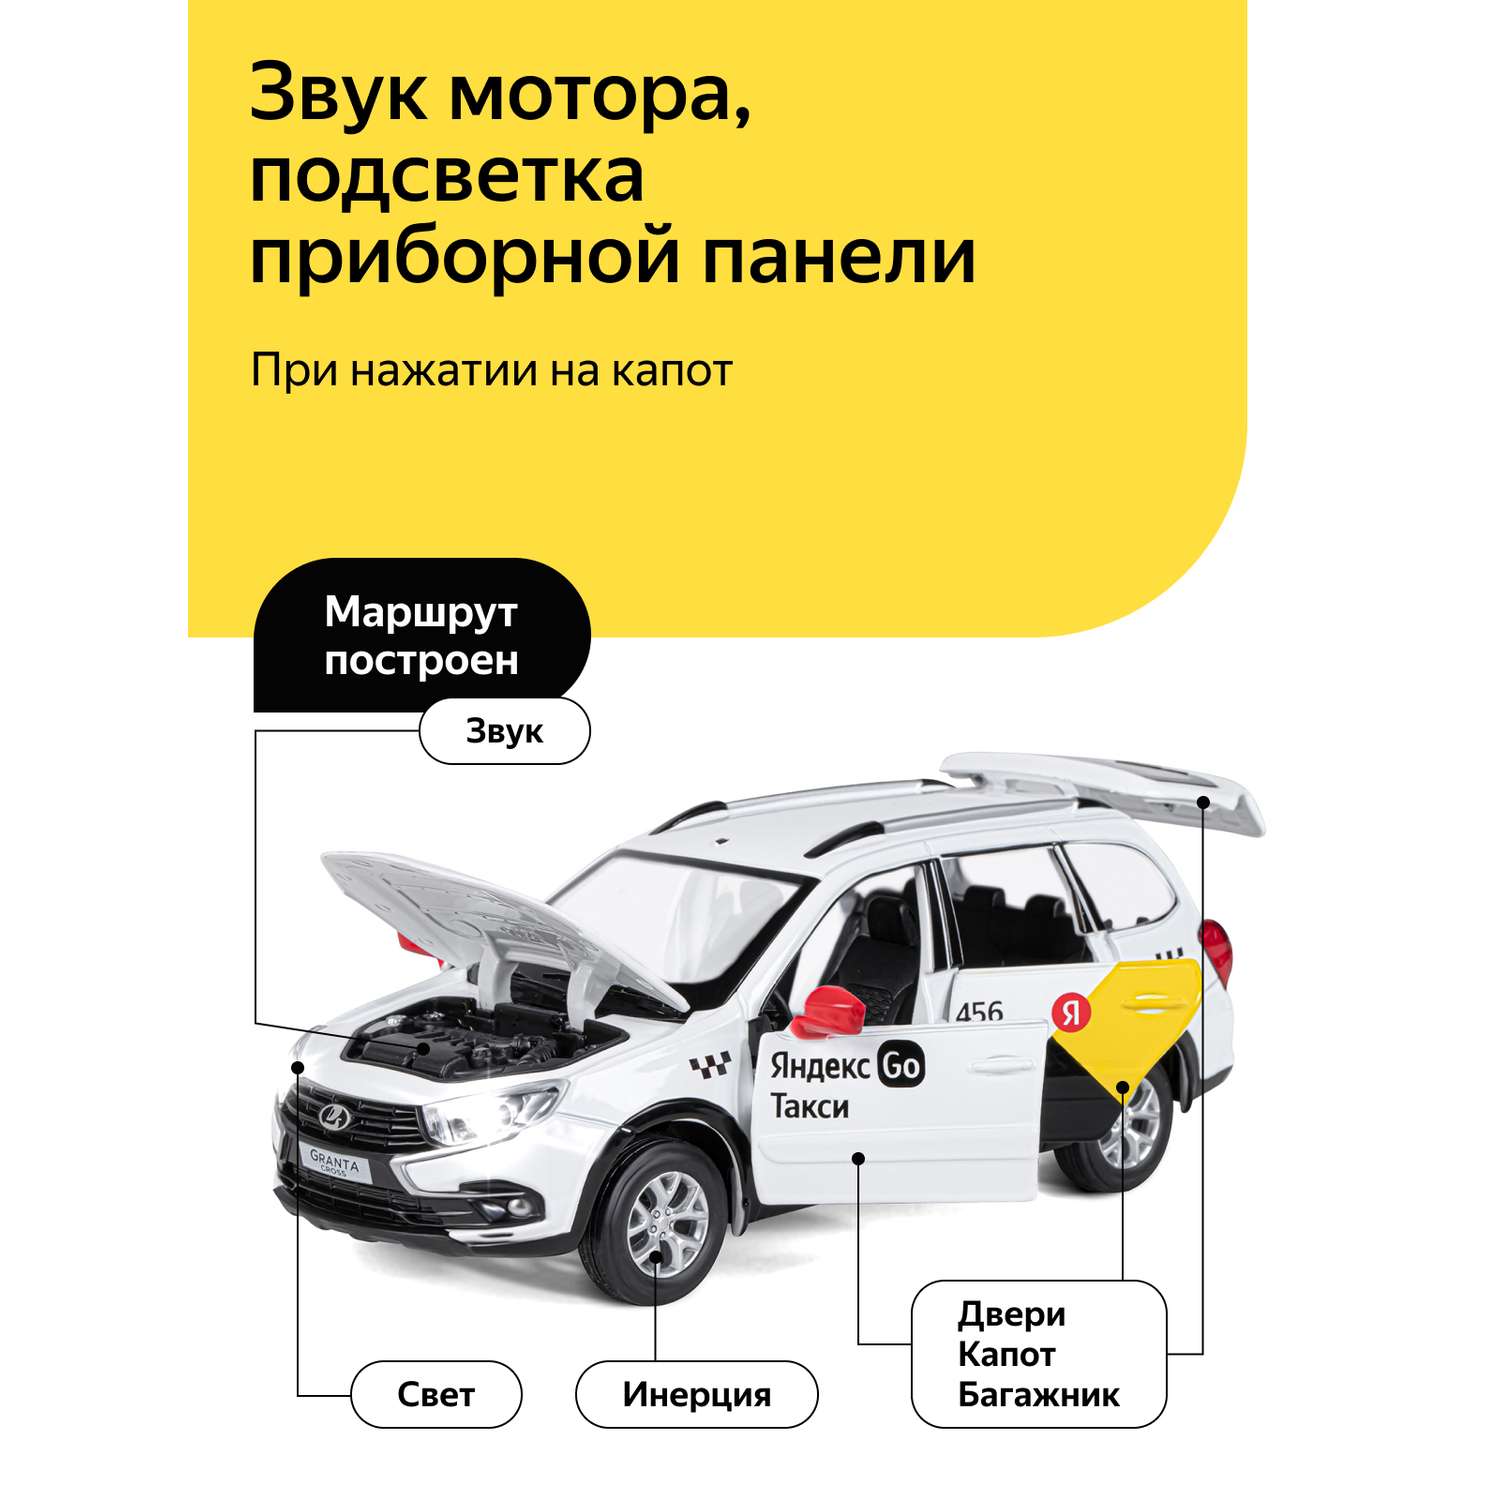 Машинка металлическая Яндекс GO игрушка детская 1:24 Lada Granta Cross белый инерционная JB1251346/Яндекс GO - фото 2